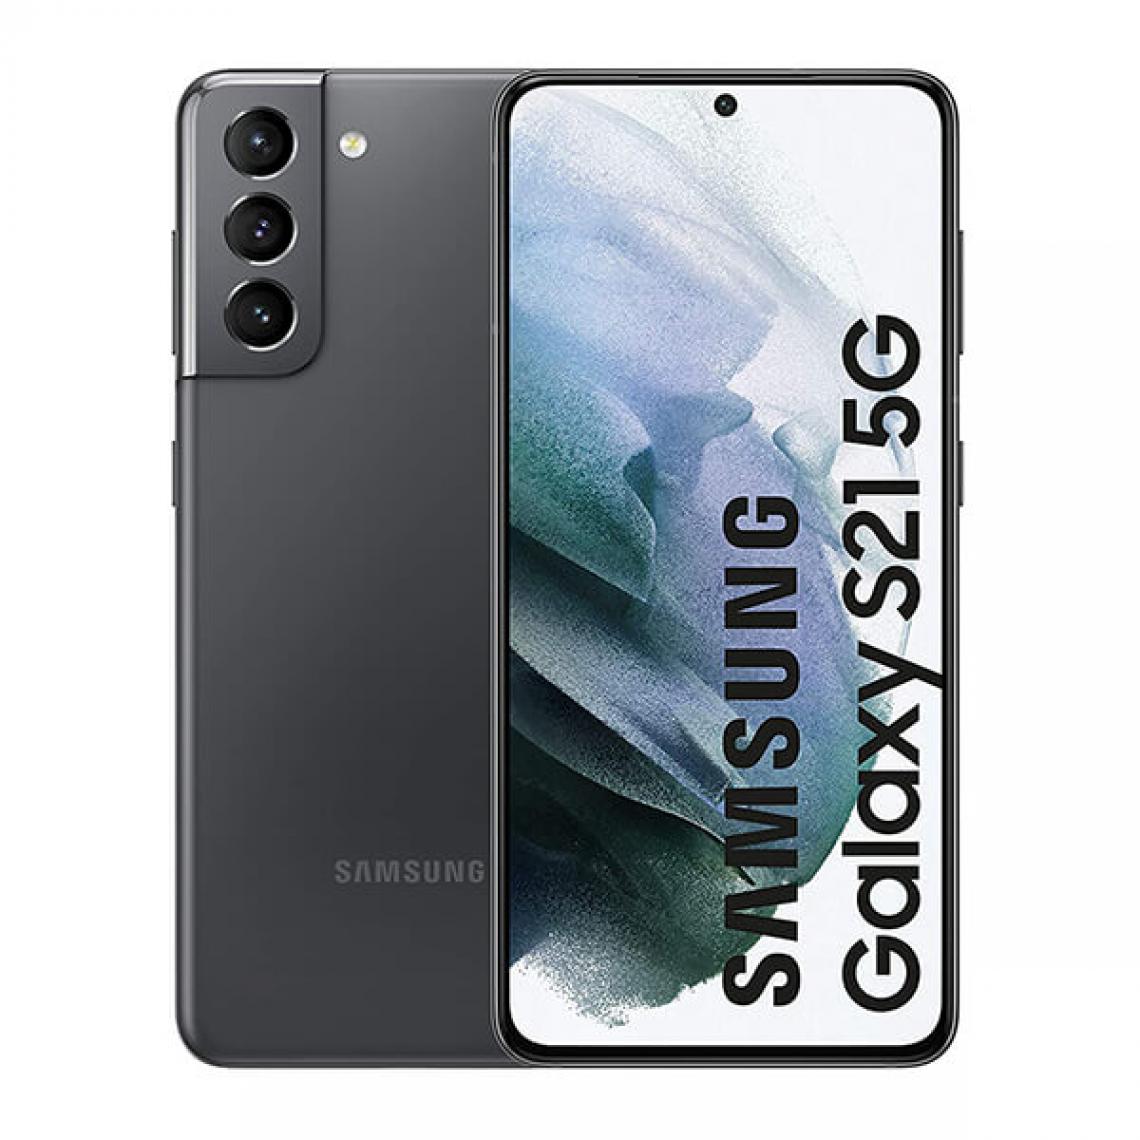 Samsung - Samsung Galaxy S21 5G 8Go/128Go Gris (Phantom Gray) Dual SIM G991 - Smartphone Android